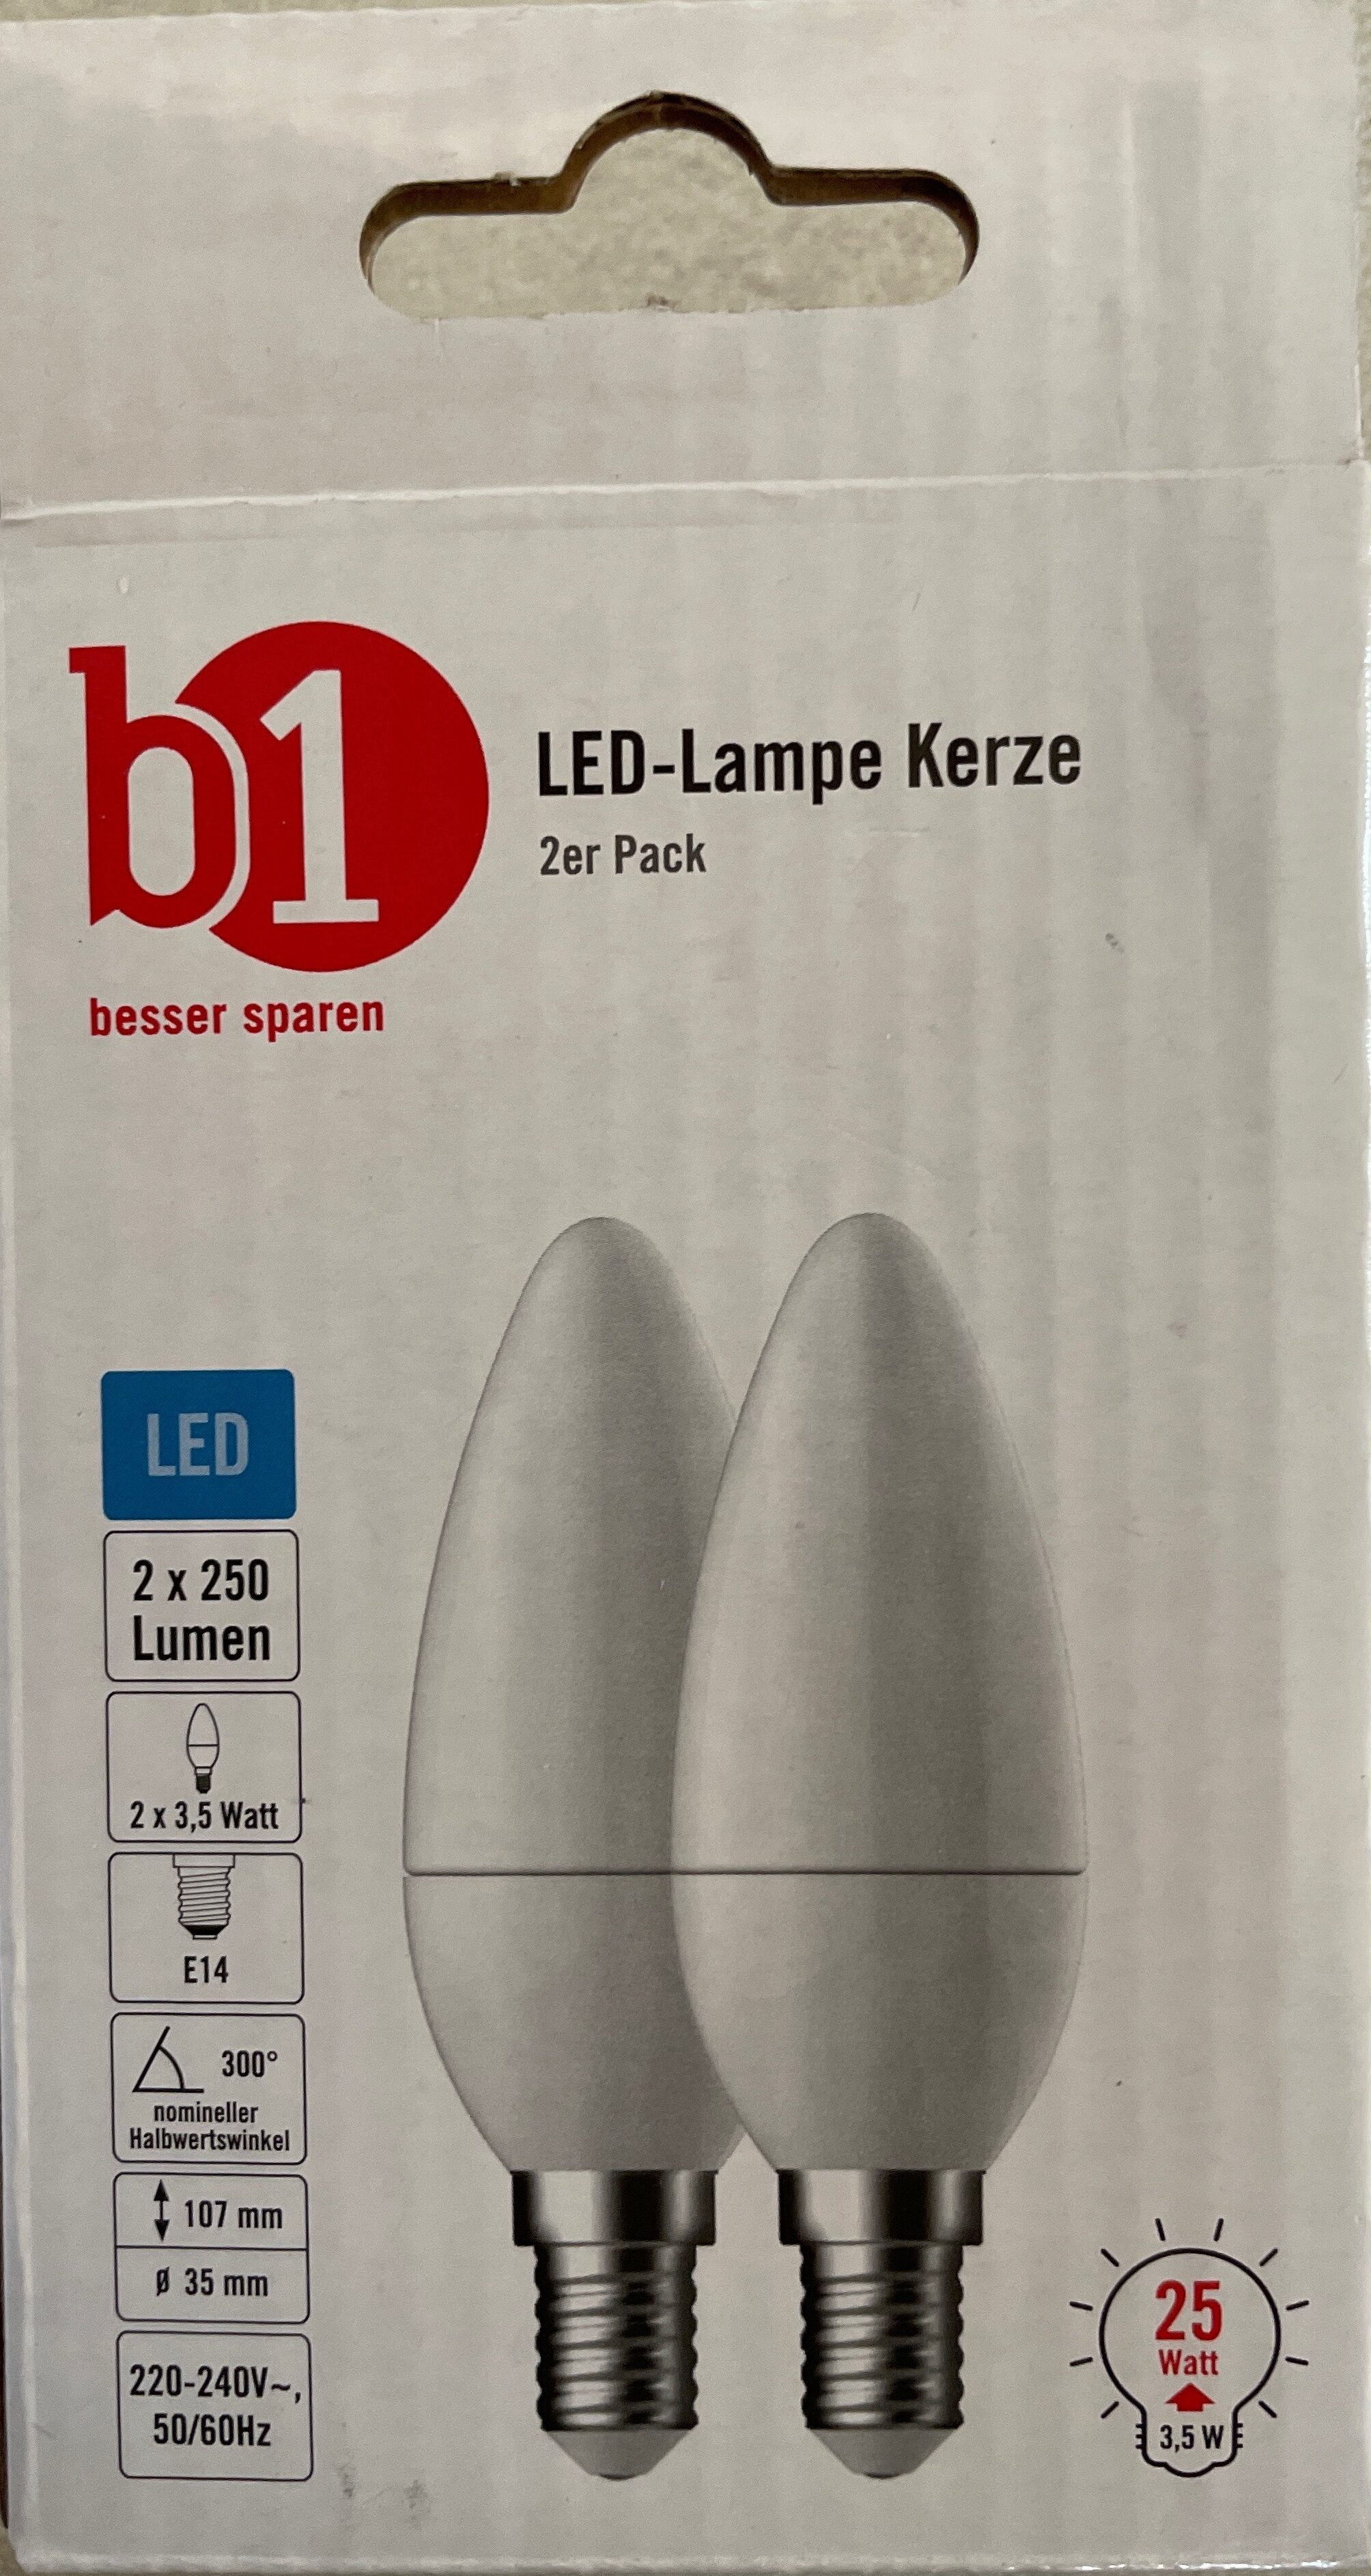 LED-Lampe Kerze 3,5W - Product - de